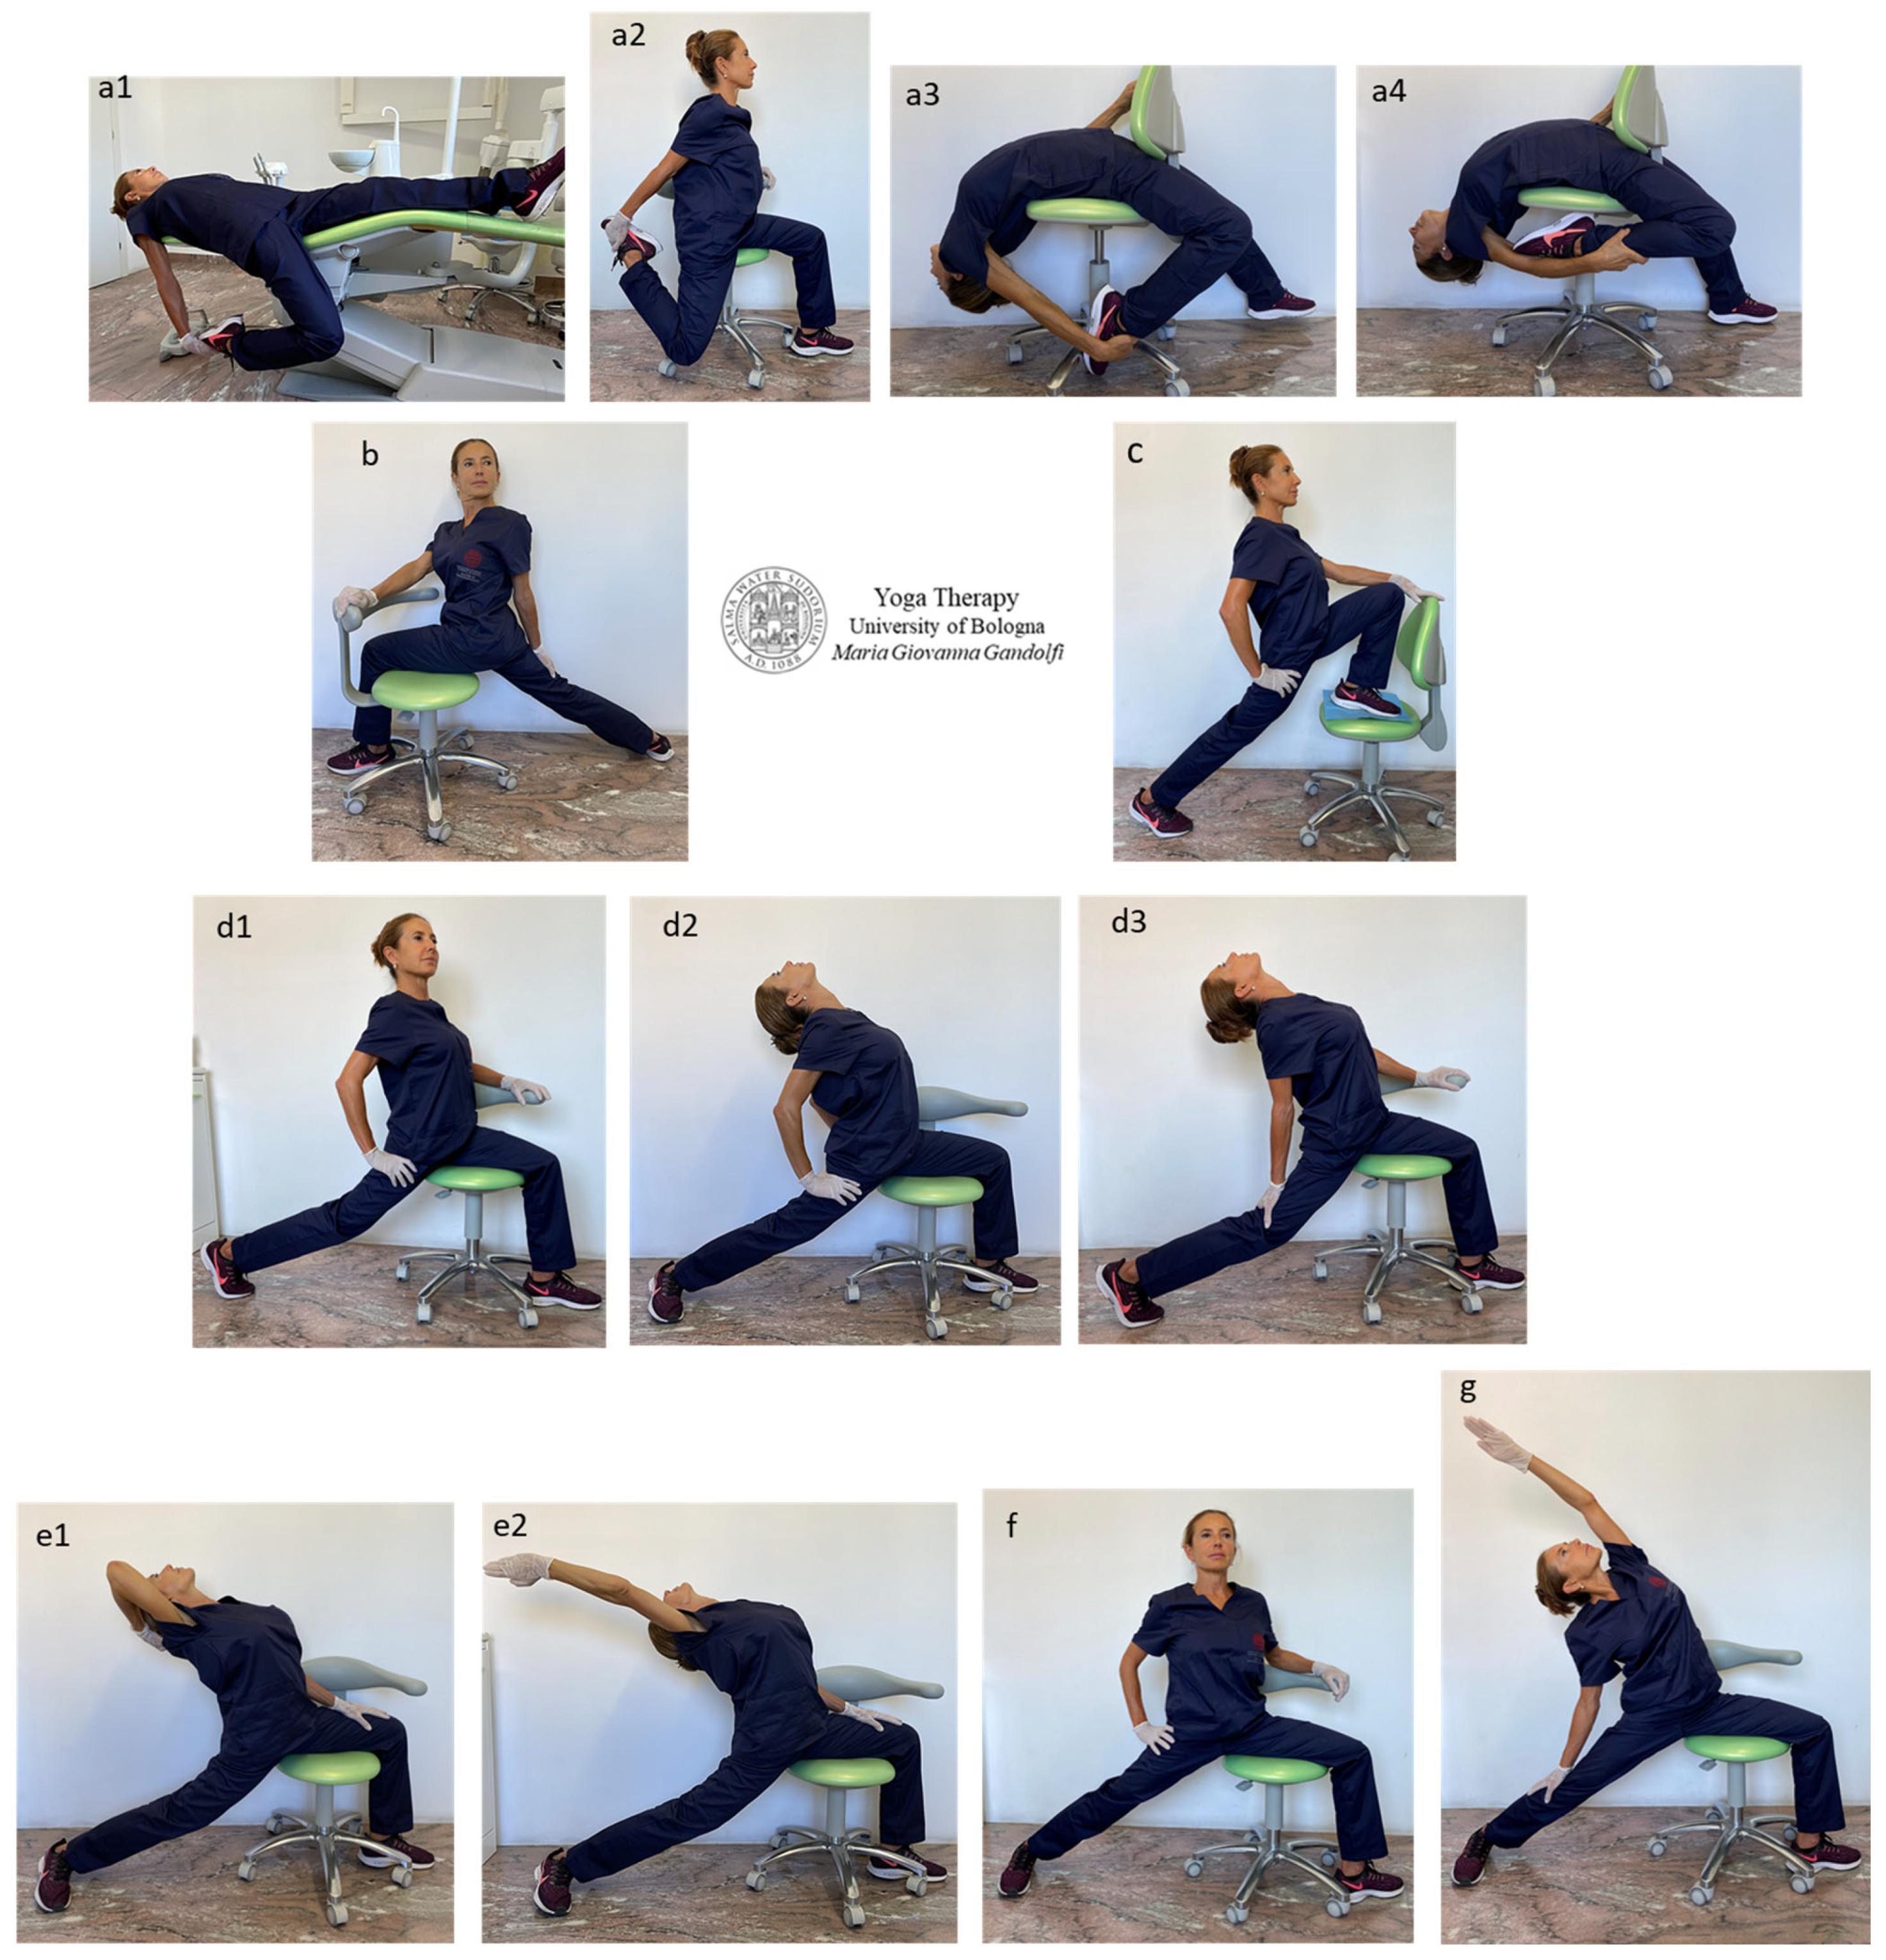 Yoga for Arrhythmia: दिल की अनियमित धड़कन से हैं परेशान तो रोज करें ये  योगासन | yoga poses for arrhythmia know steps benefits in hindi |  OnlyMyHealth